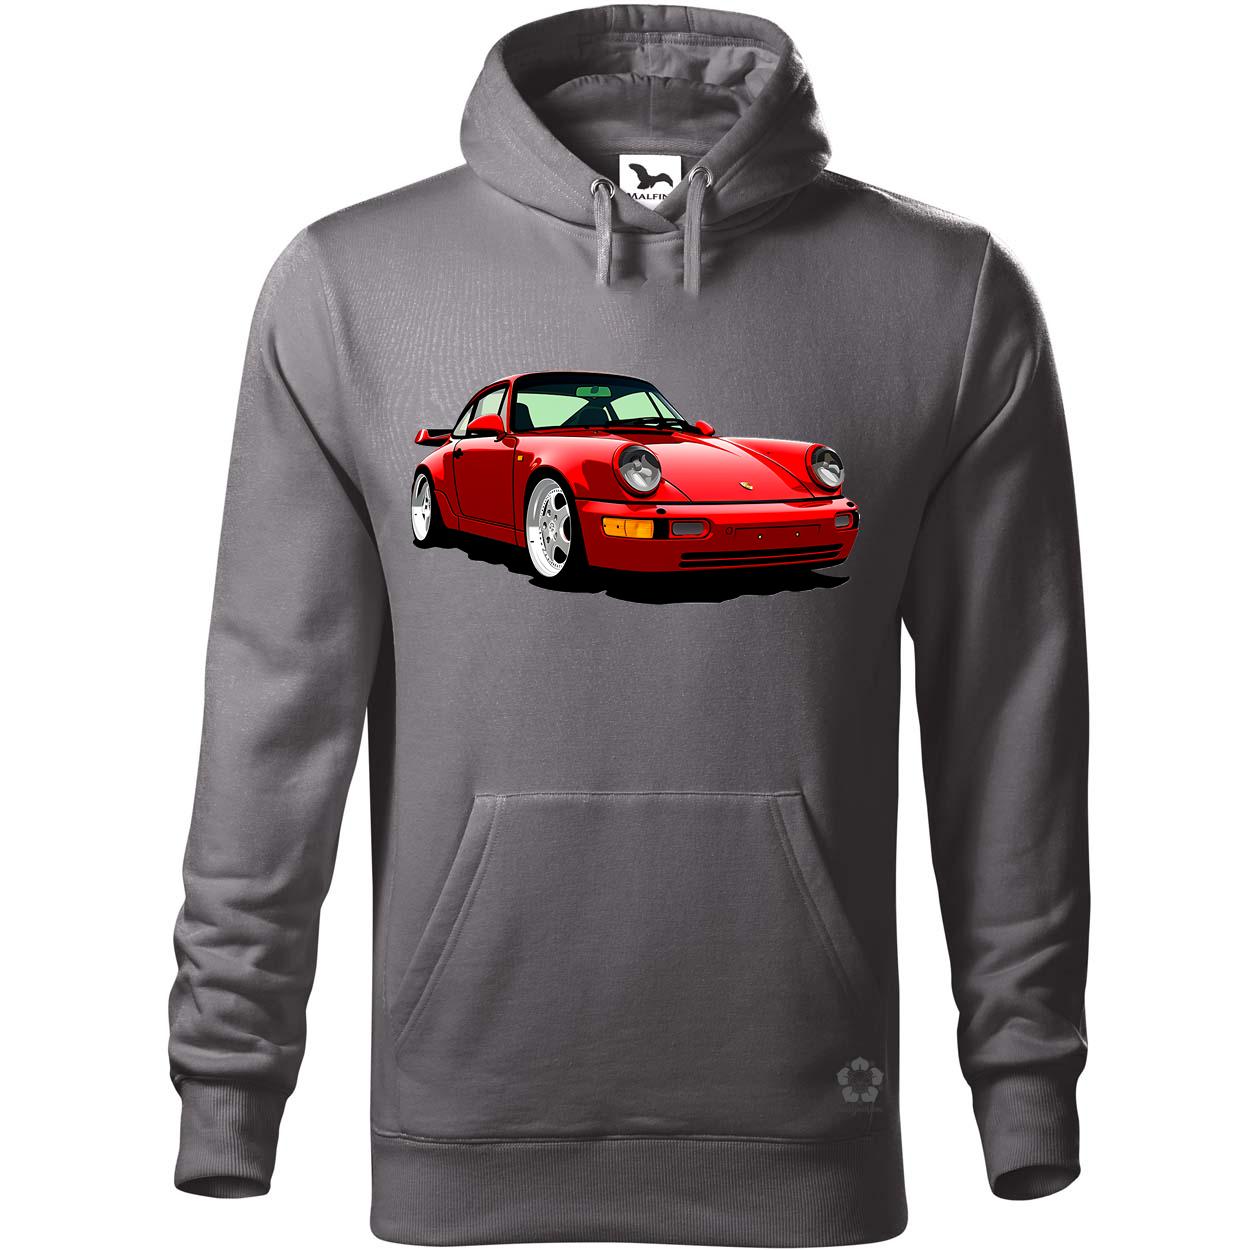 Porsche 911 rajz v5